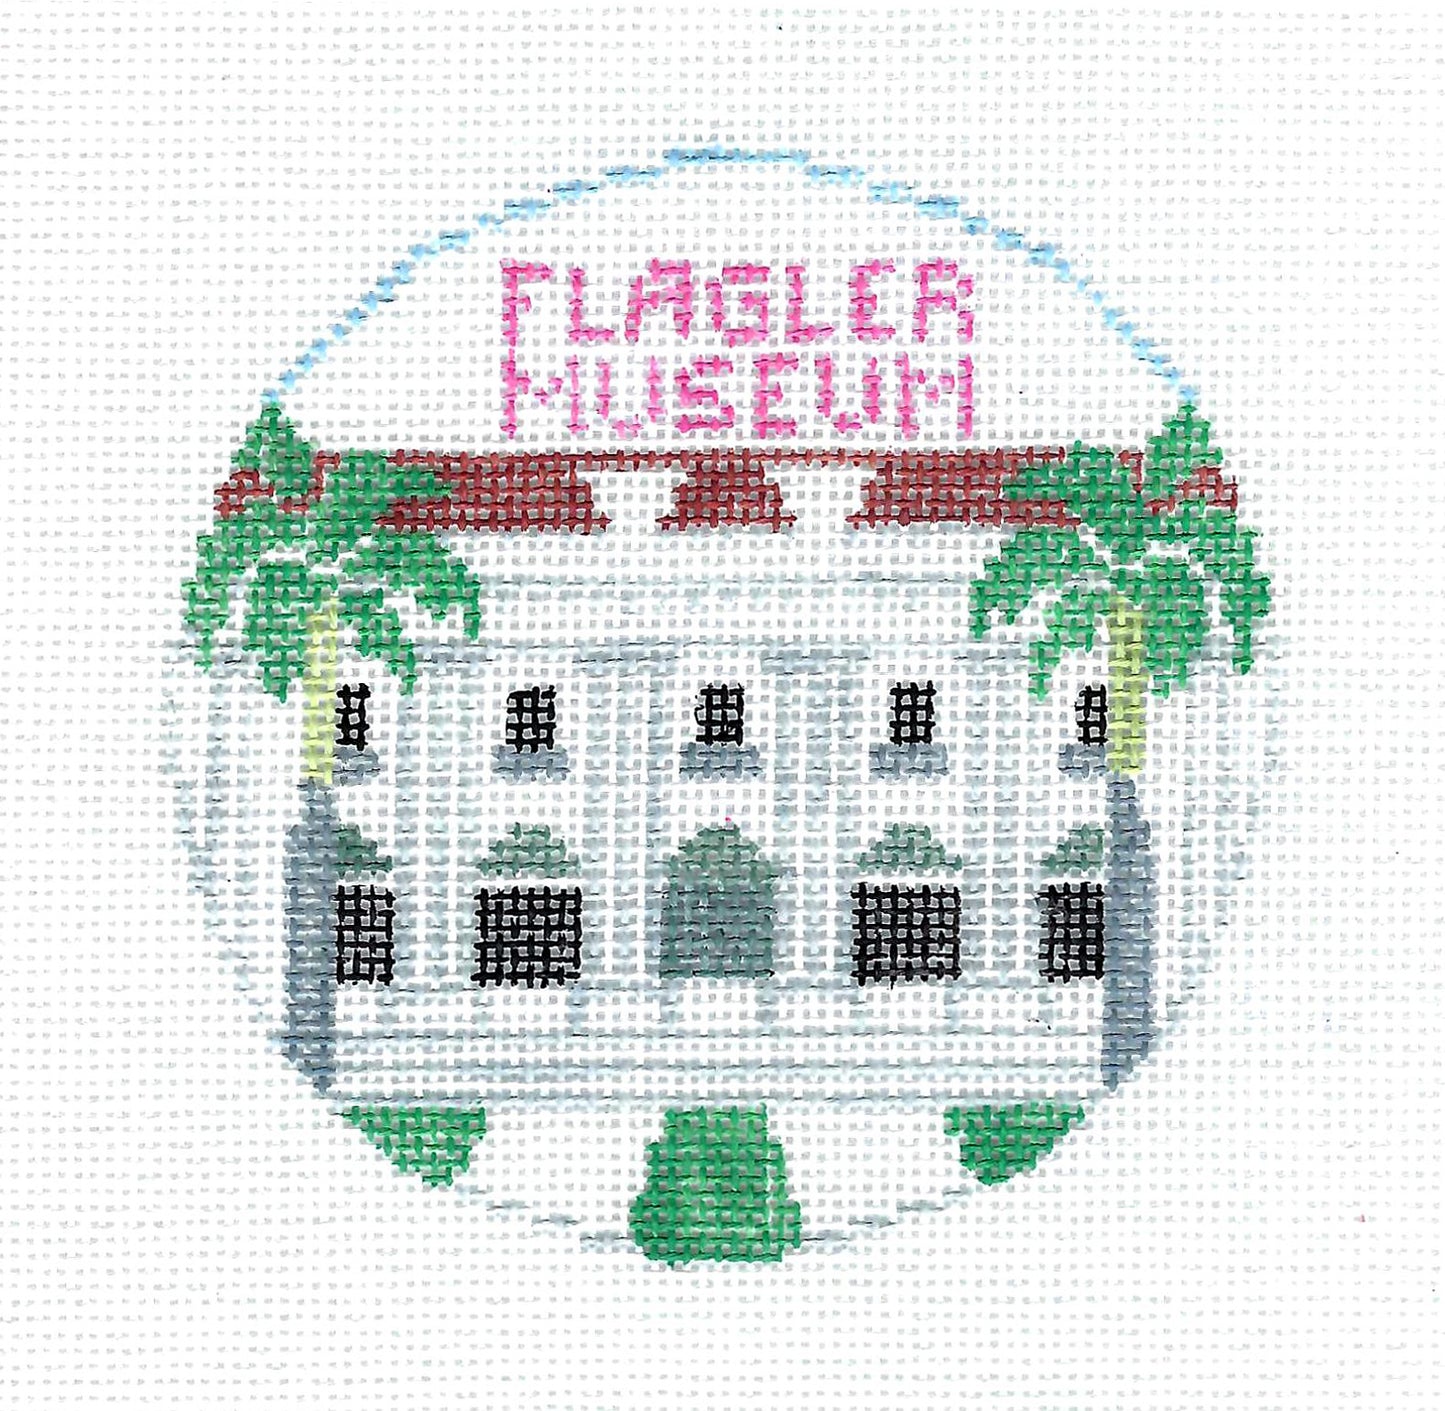 Travel  Round ~ FLAGLER MUSEUM in Palm Beach, Florida  4" Round handpainted Needlepoint Canvas ornament by Kathy Schenkel